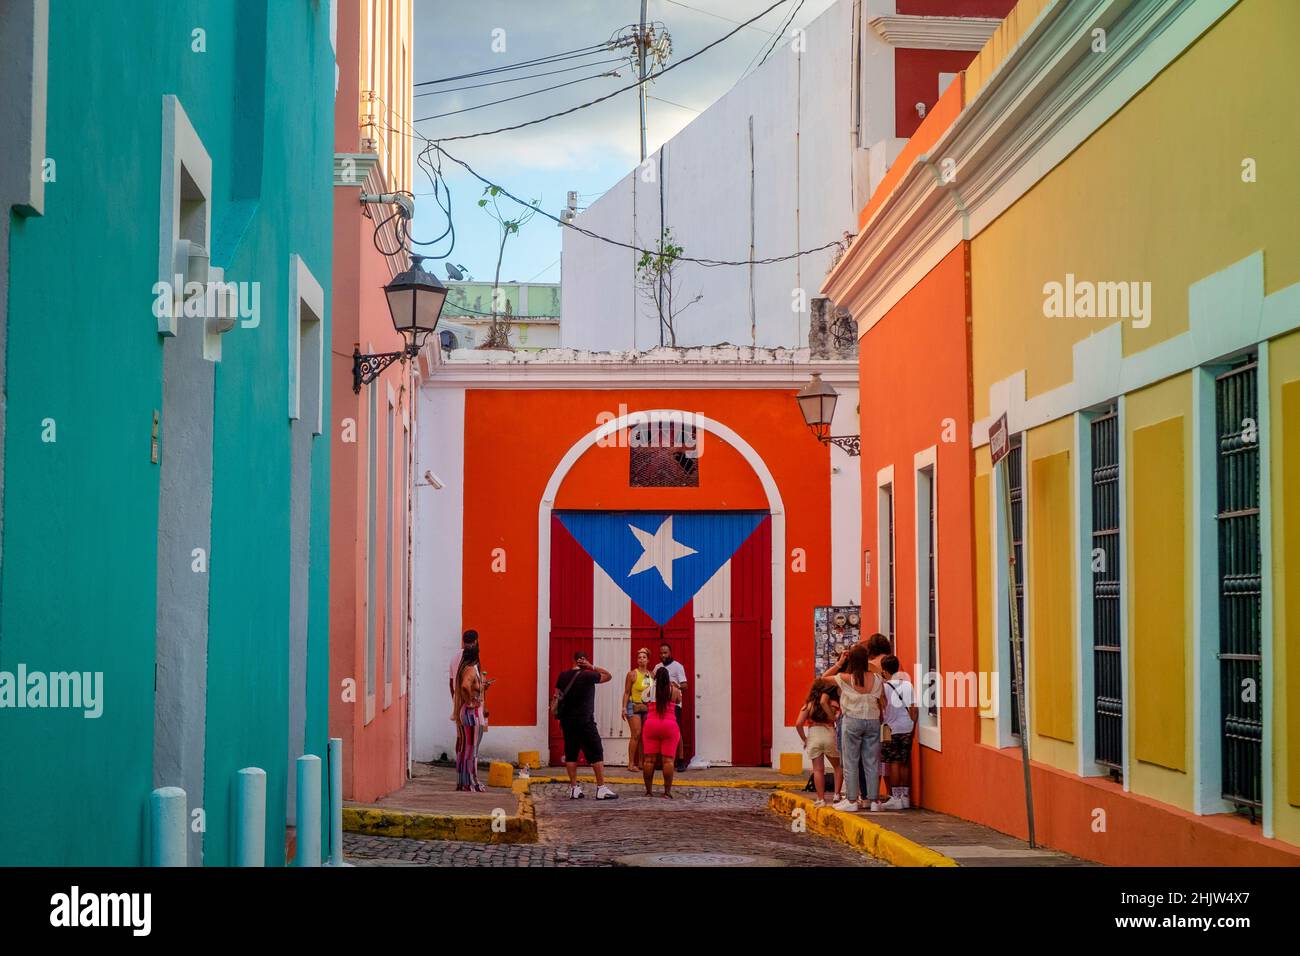 Touristen neben einem Wandbild der Puerto-ricanischen Flagge in einer Straße voller farbenfroher Häuser, Old San Juan, Puerto Rico Stockfoto